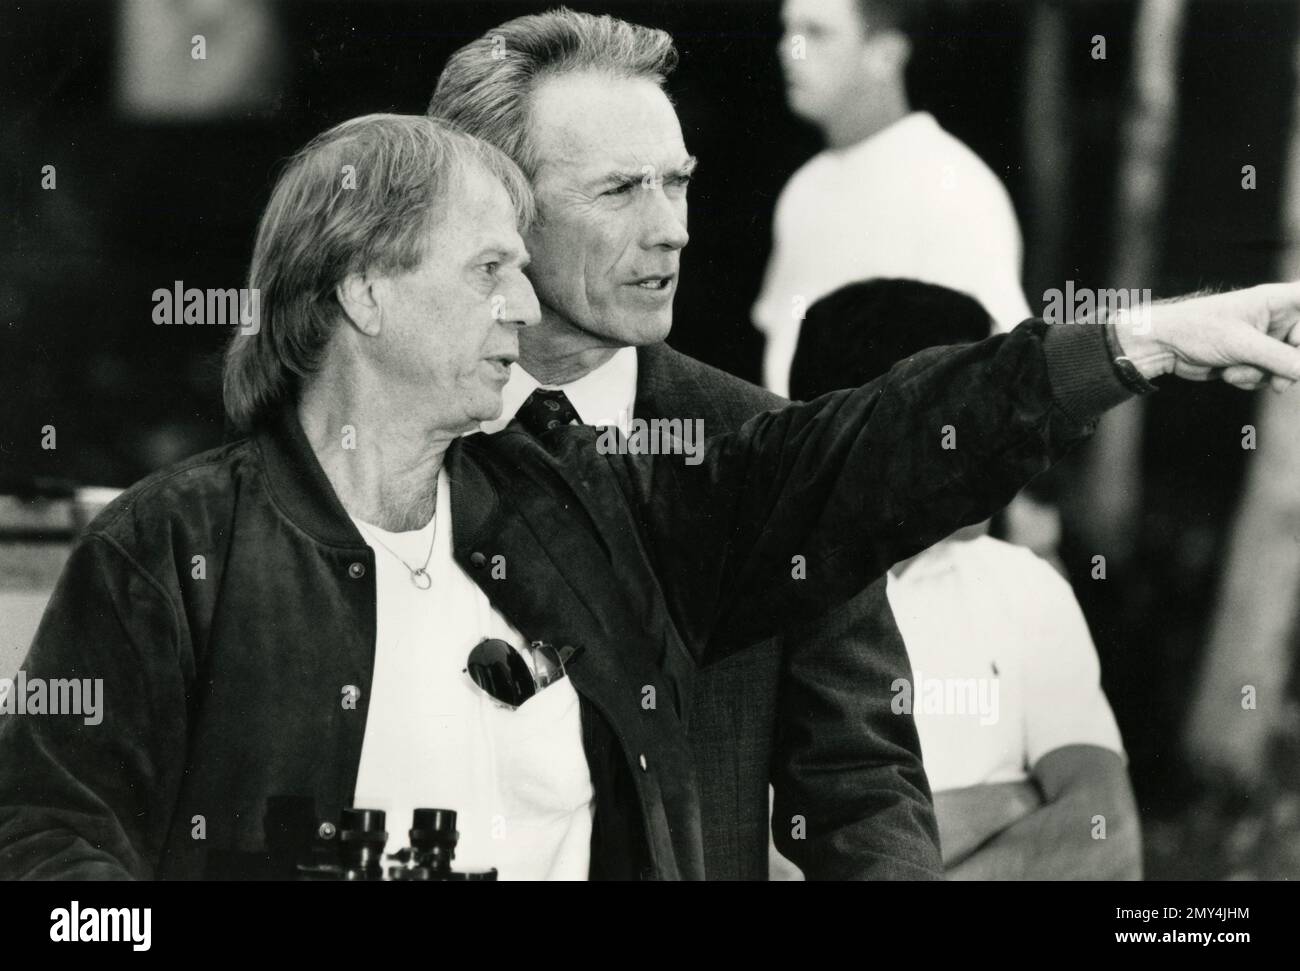 Le réalisateur américain Wolfgang Peterson et l'acteur Clint Eastwood sur la scène du film dans la ligne de feu, USA 1993 Banque D'Images